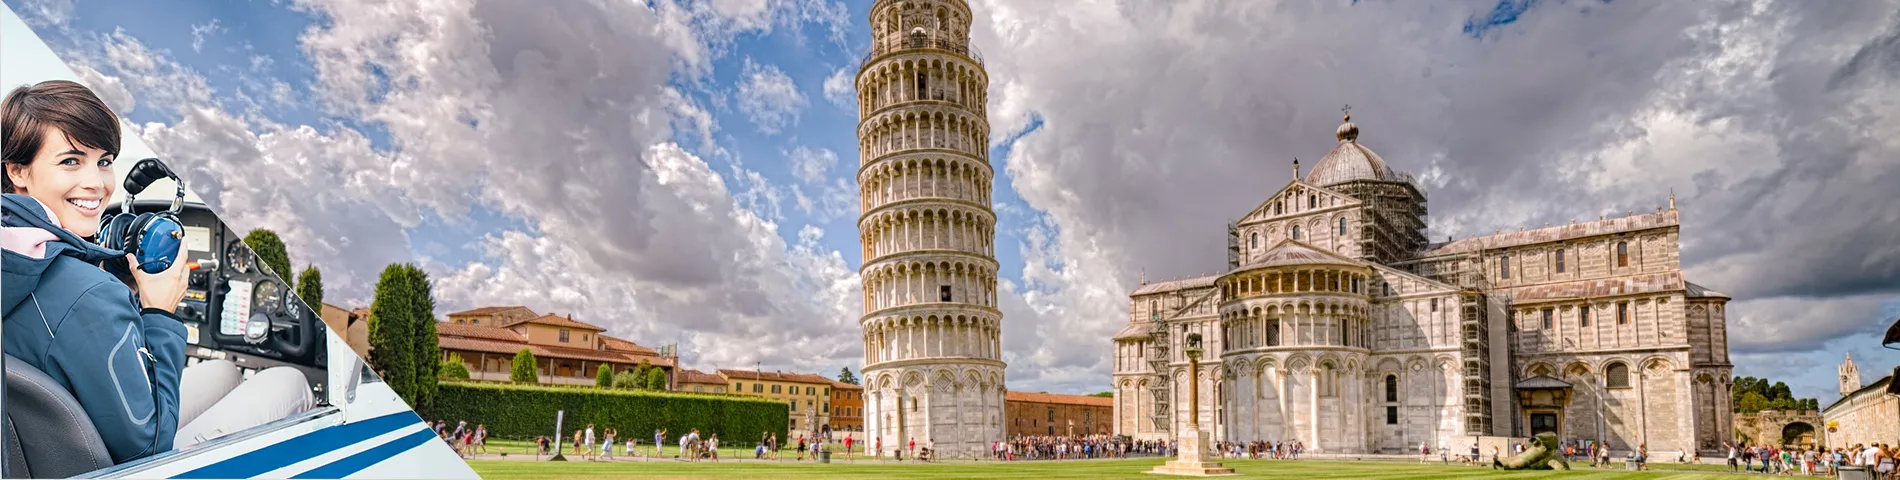 Pisa - Italiaans  voor de luchtvaart